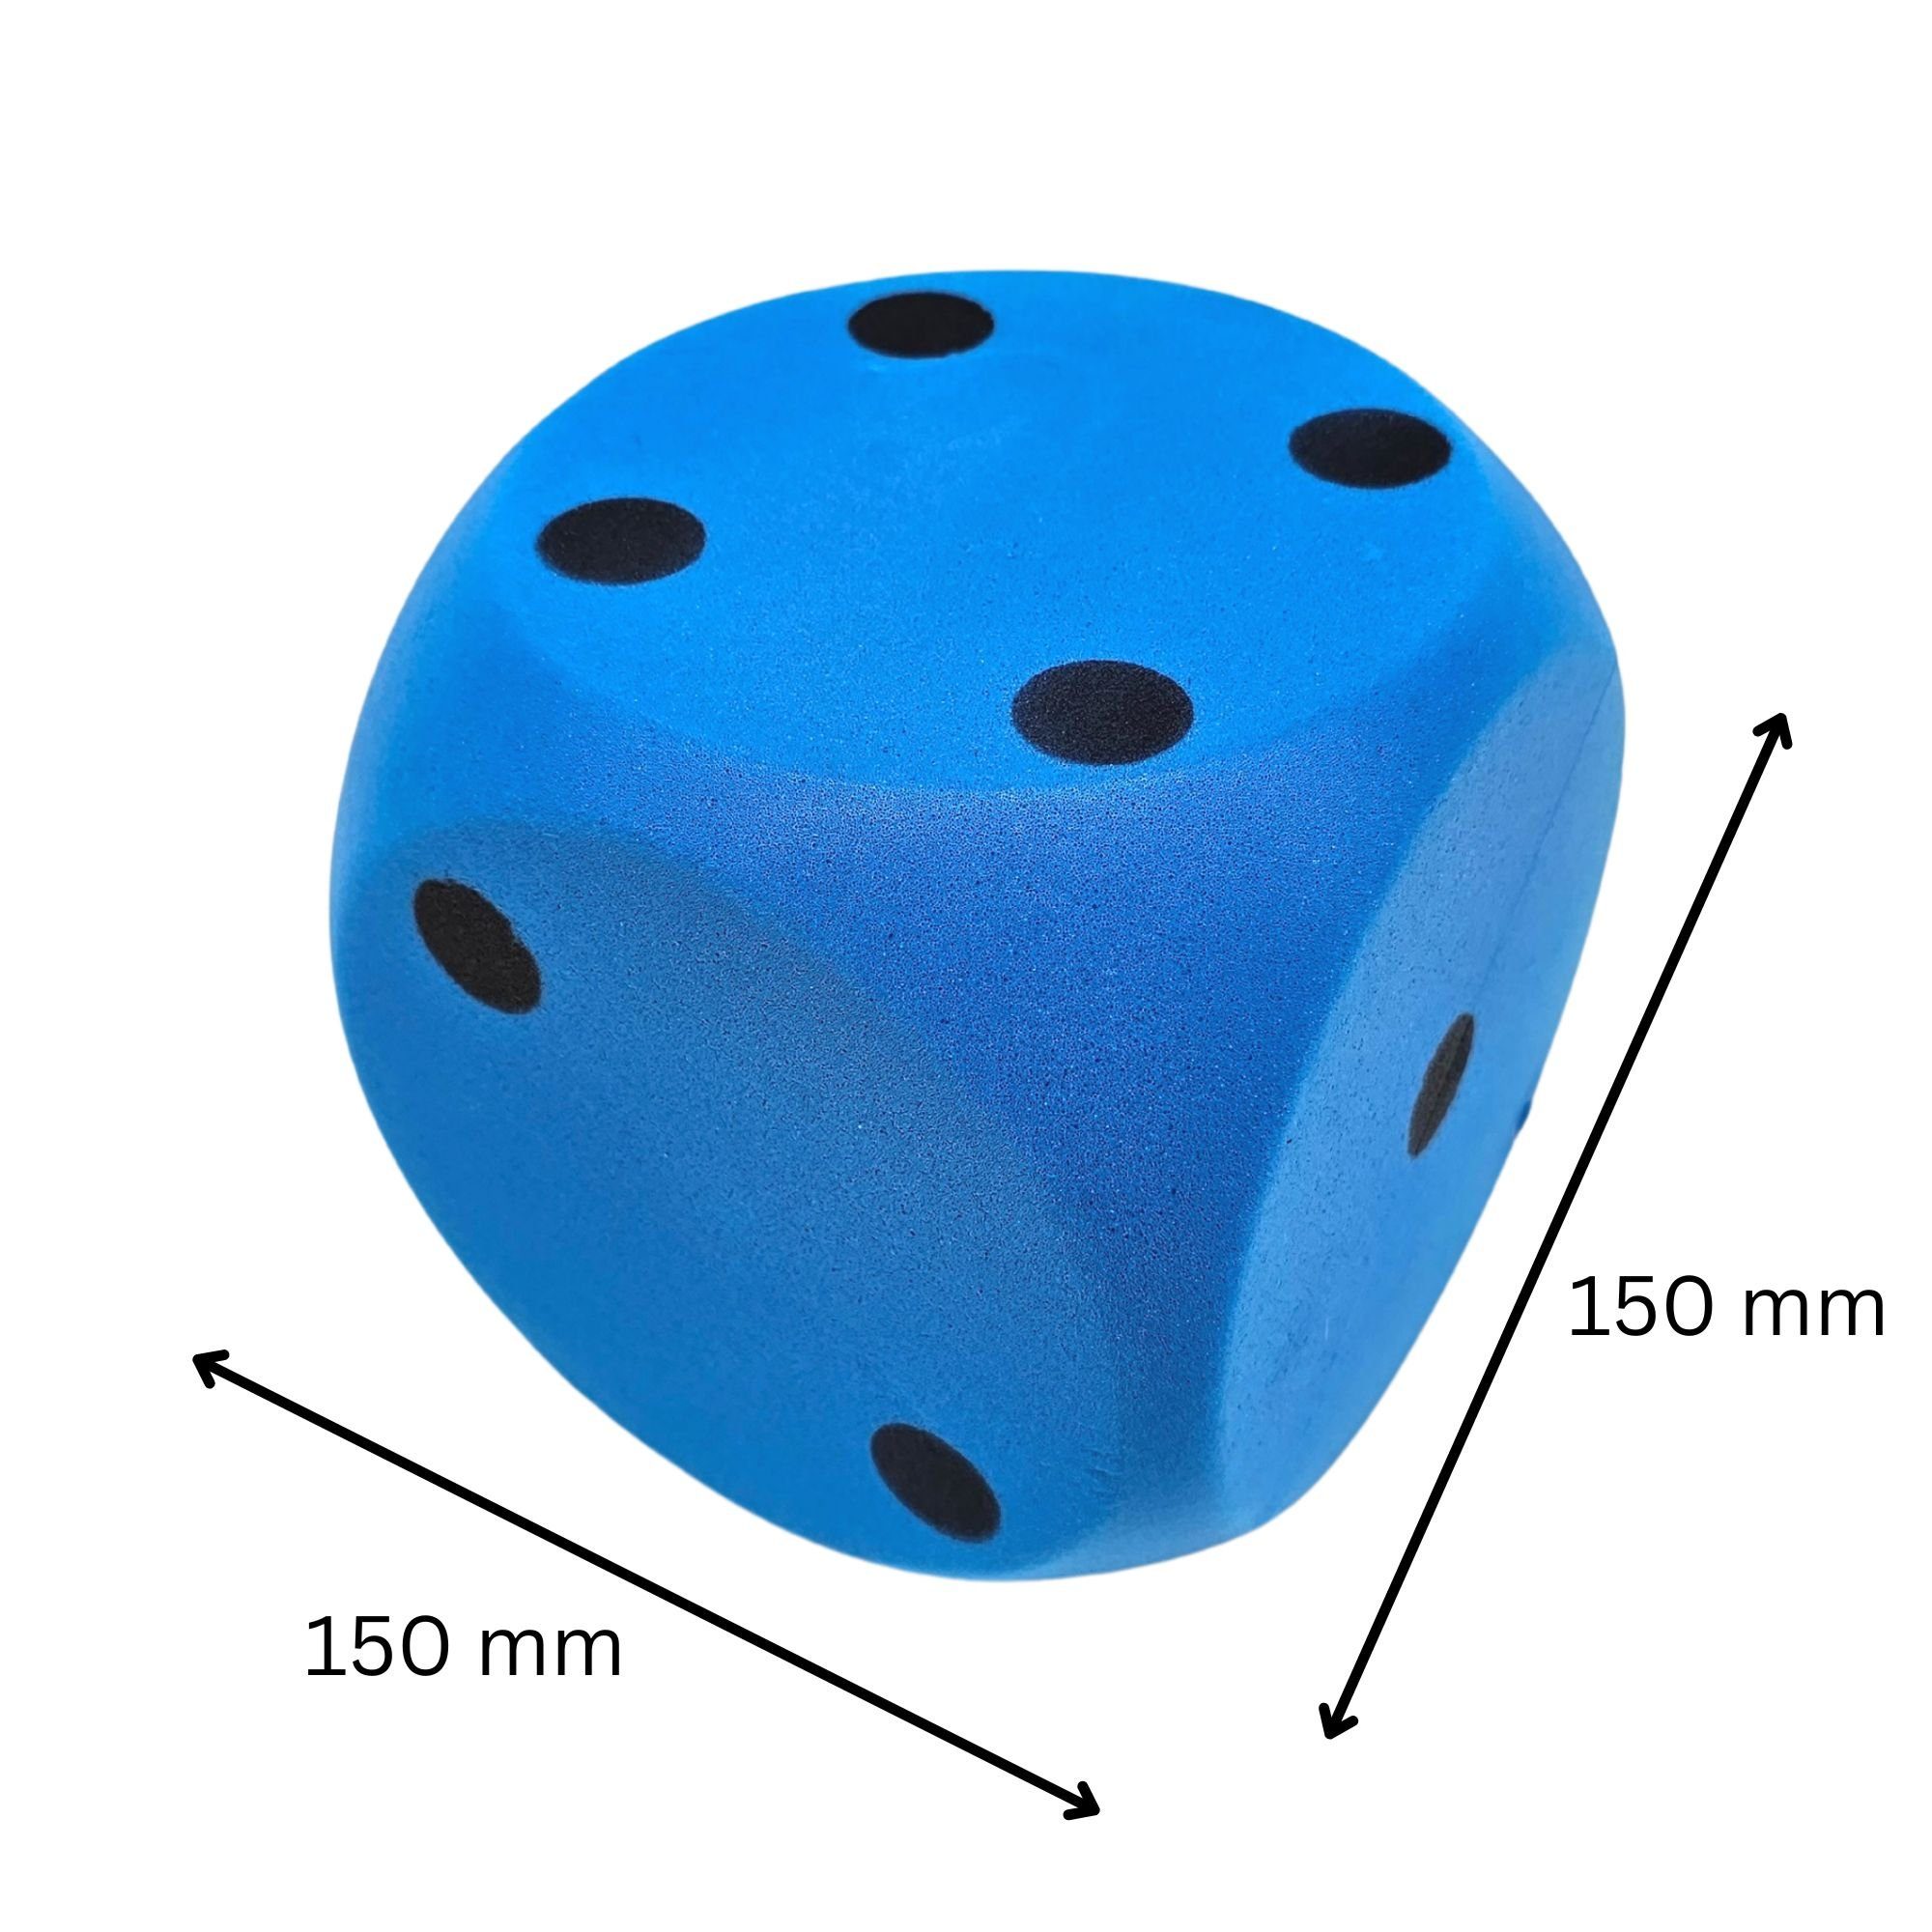 großer XXL - weicher Soft - Würfel - blau - 15,5 cm * 15,5 cm - Schaumstoff  - Schaumstoffwürfel - Augenwürfel - Softwürfel - Kunststoffwürfel groß 